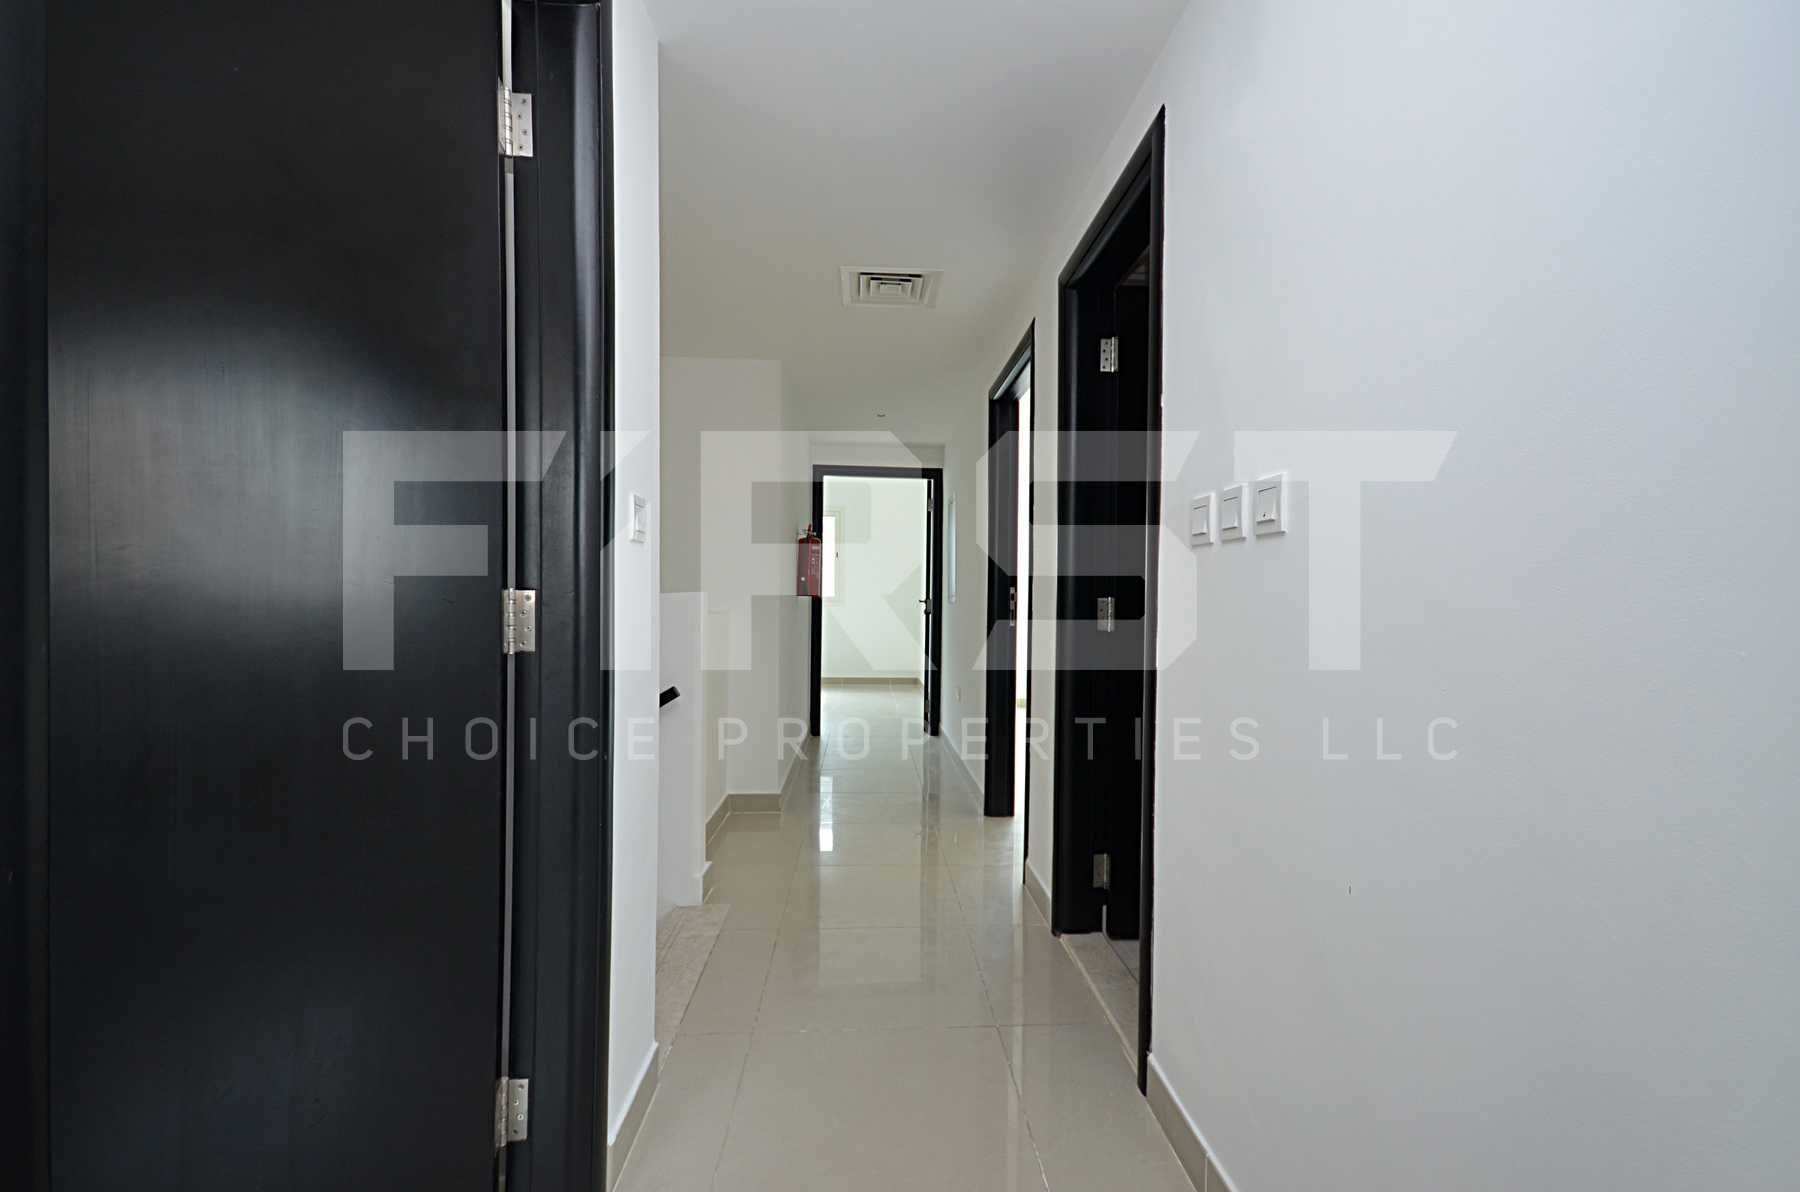 Internal Photo of 4 Bedroom Villa in Al Reef Villas Al Reef Abu Dhabi UAE 265.5 sq.m 2858 sq.ft (30).jpg